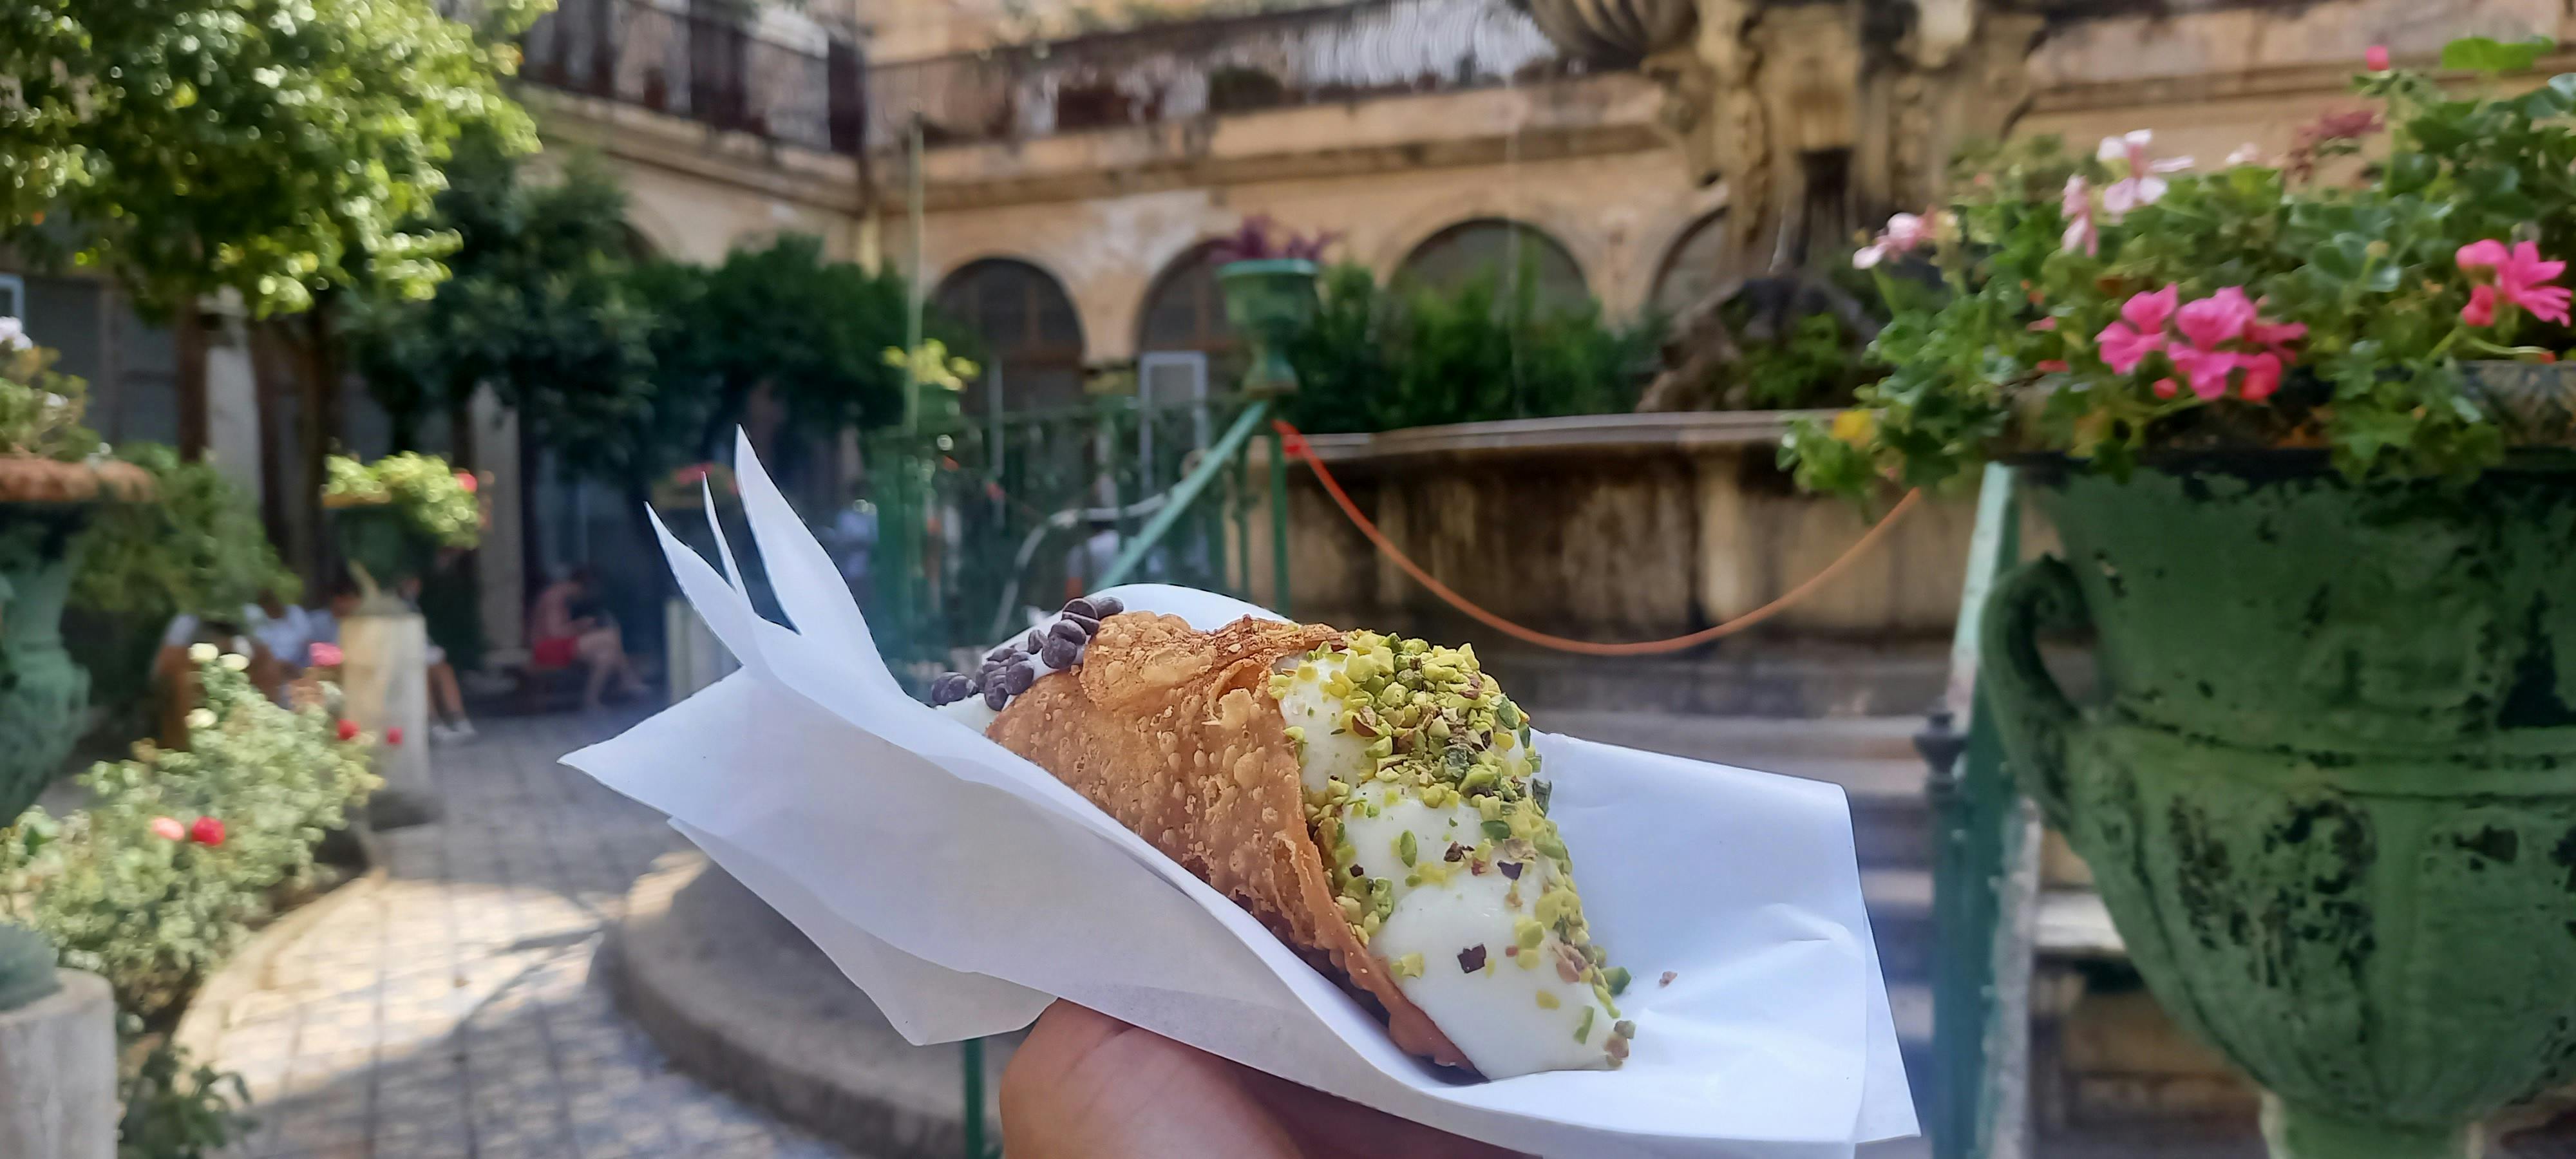 Palermo street food tour